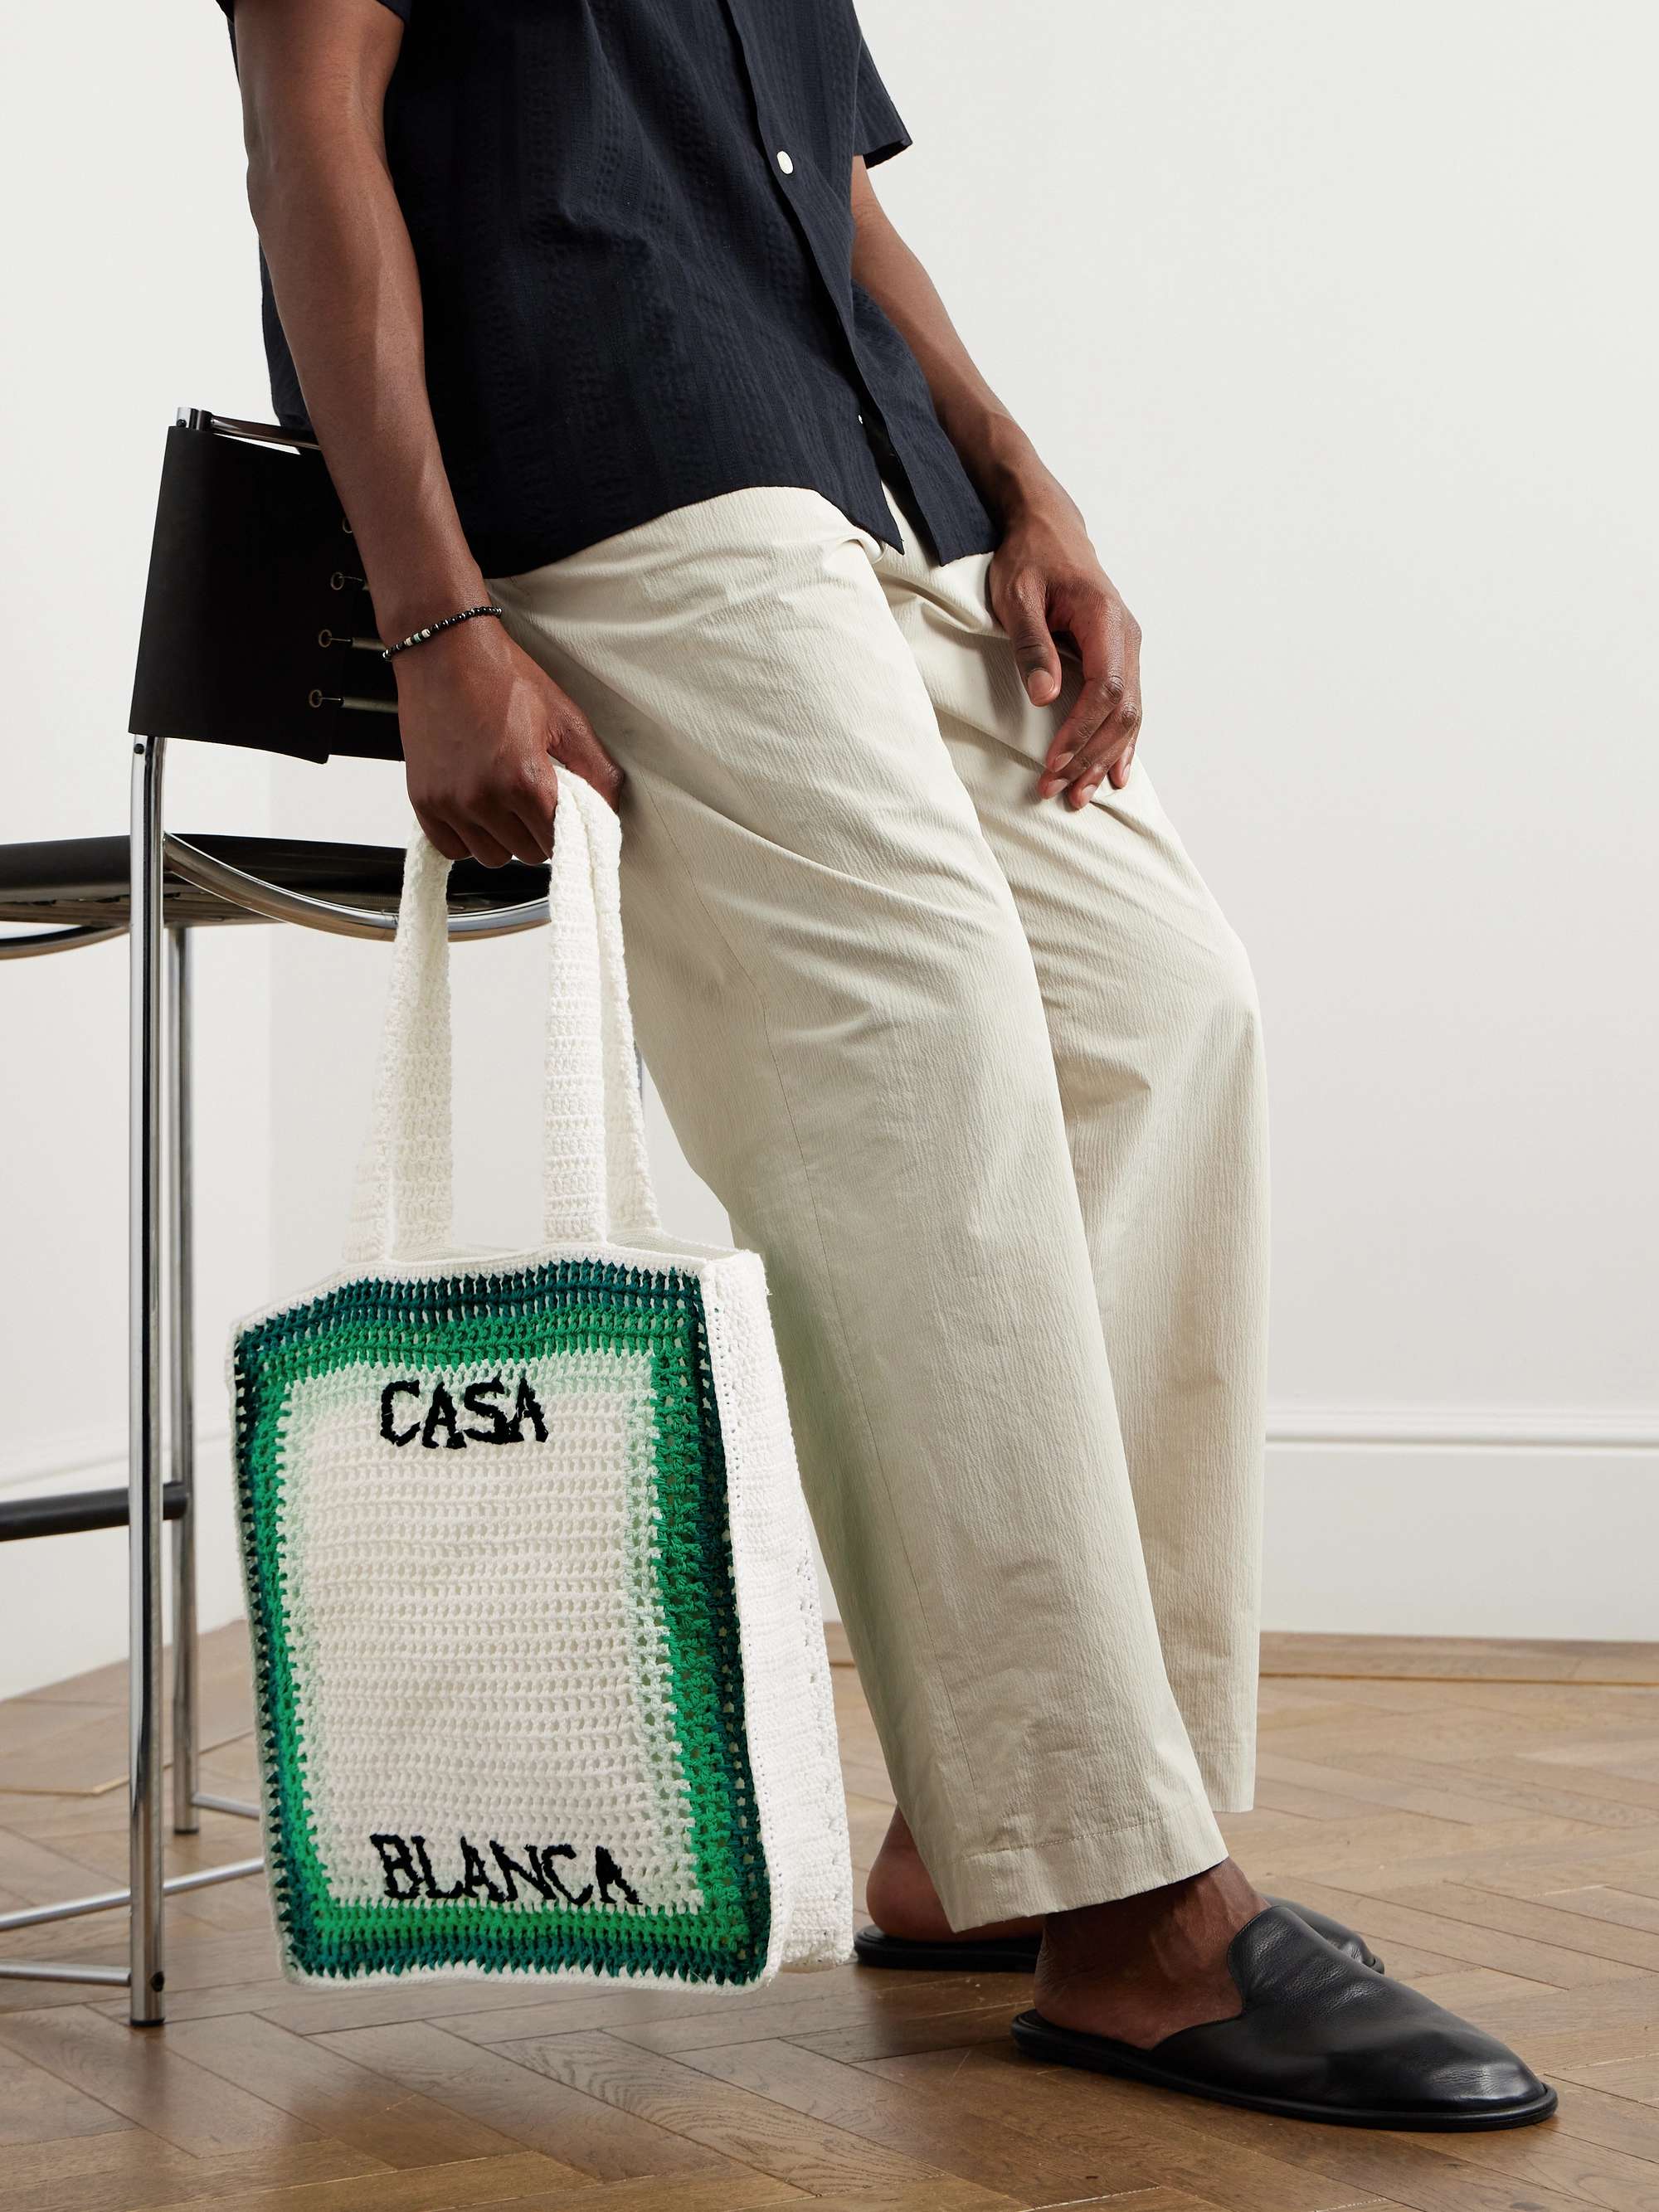 CASABLANCA Embellished Embroidered Striped Crocheted Cotton Tote Bag for  Men | MR PORTER